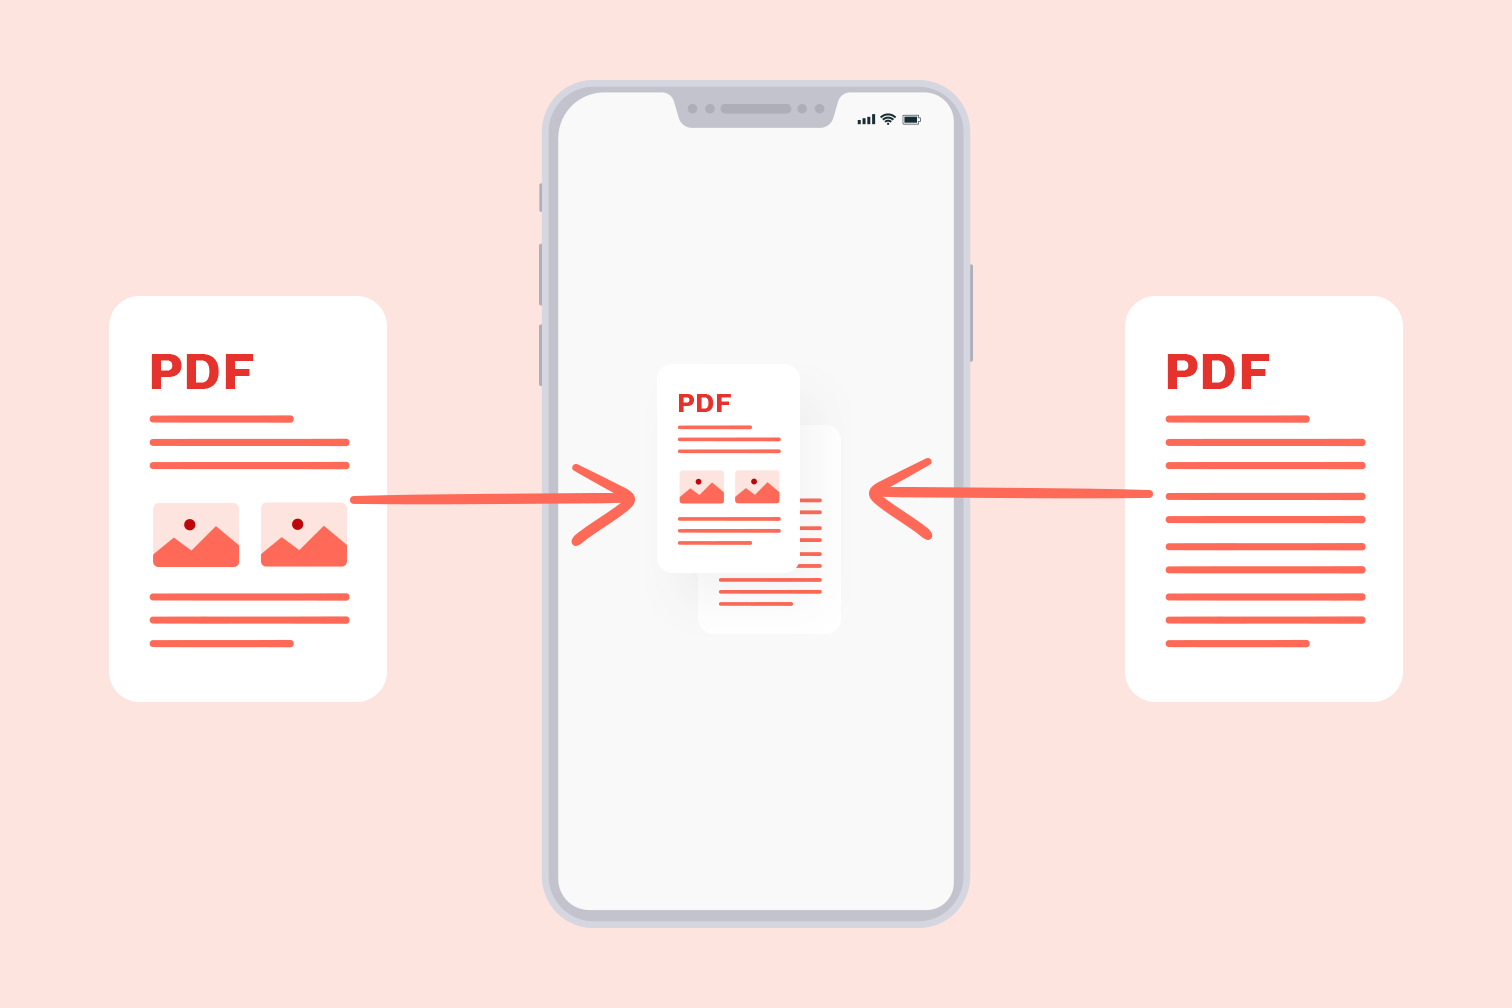 Merging PDFs by Folders